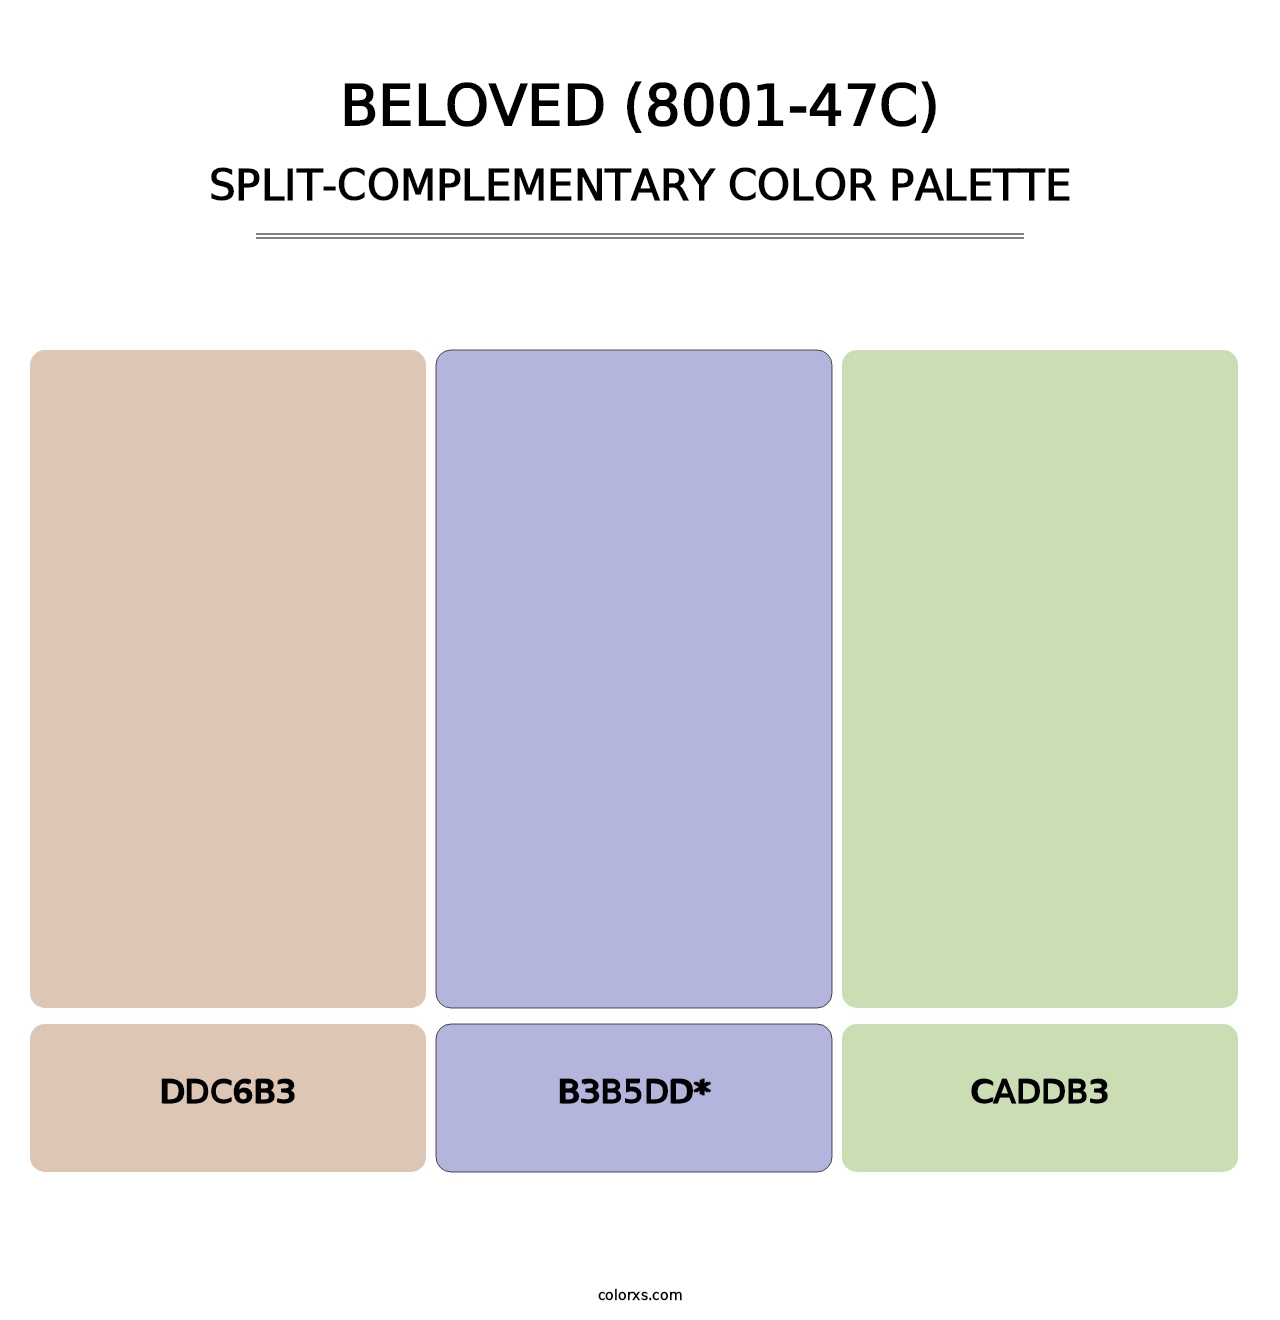 Beloved (8001-47C) - Split-Complementary Color Palette